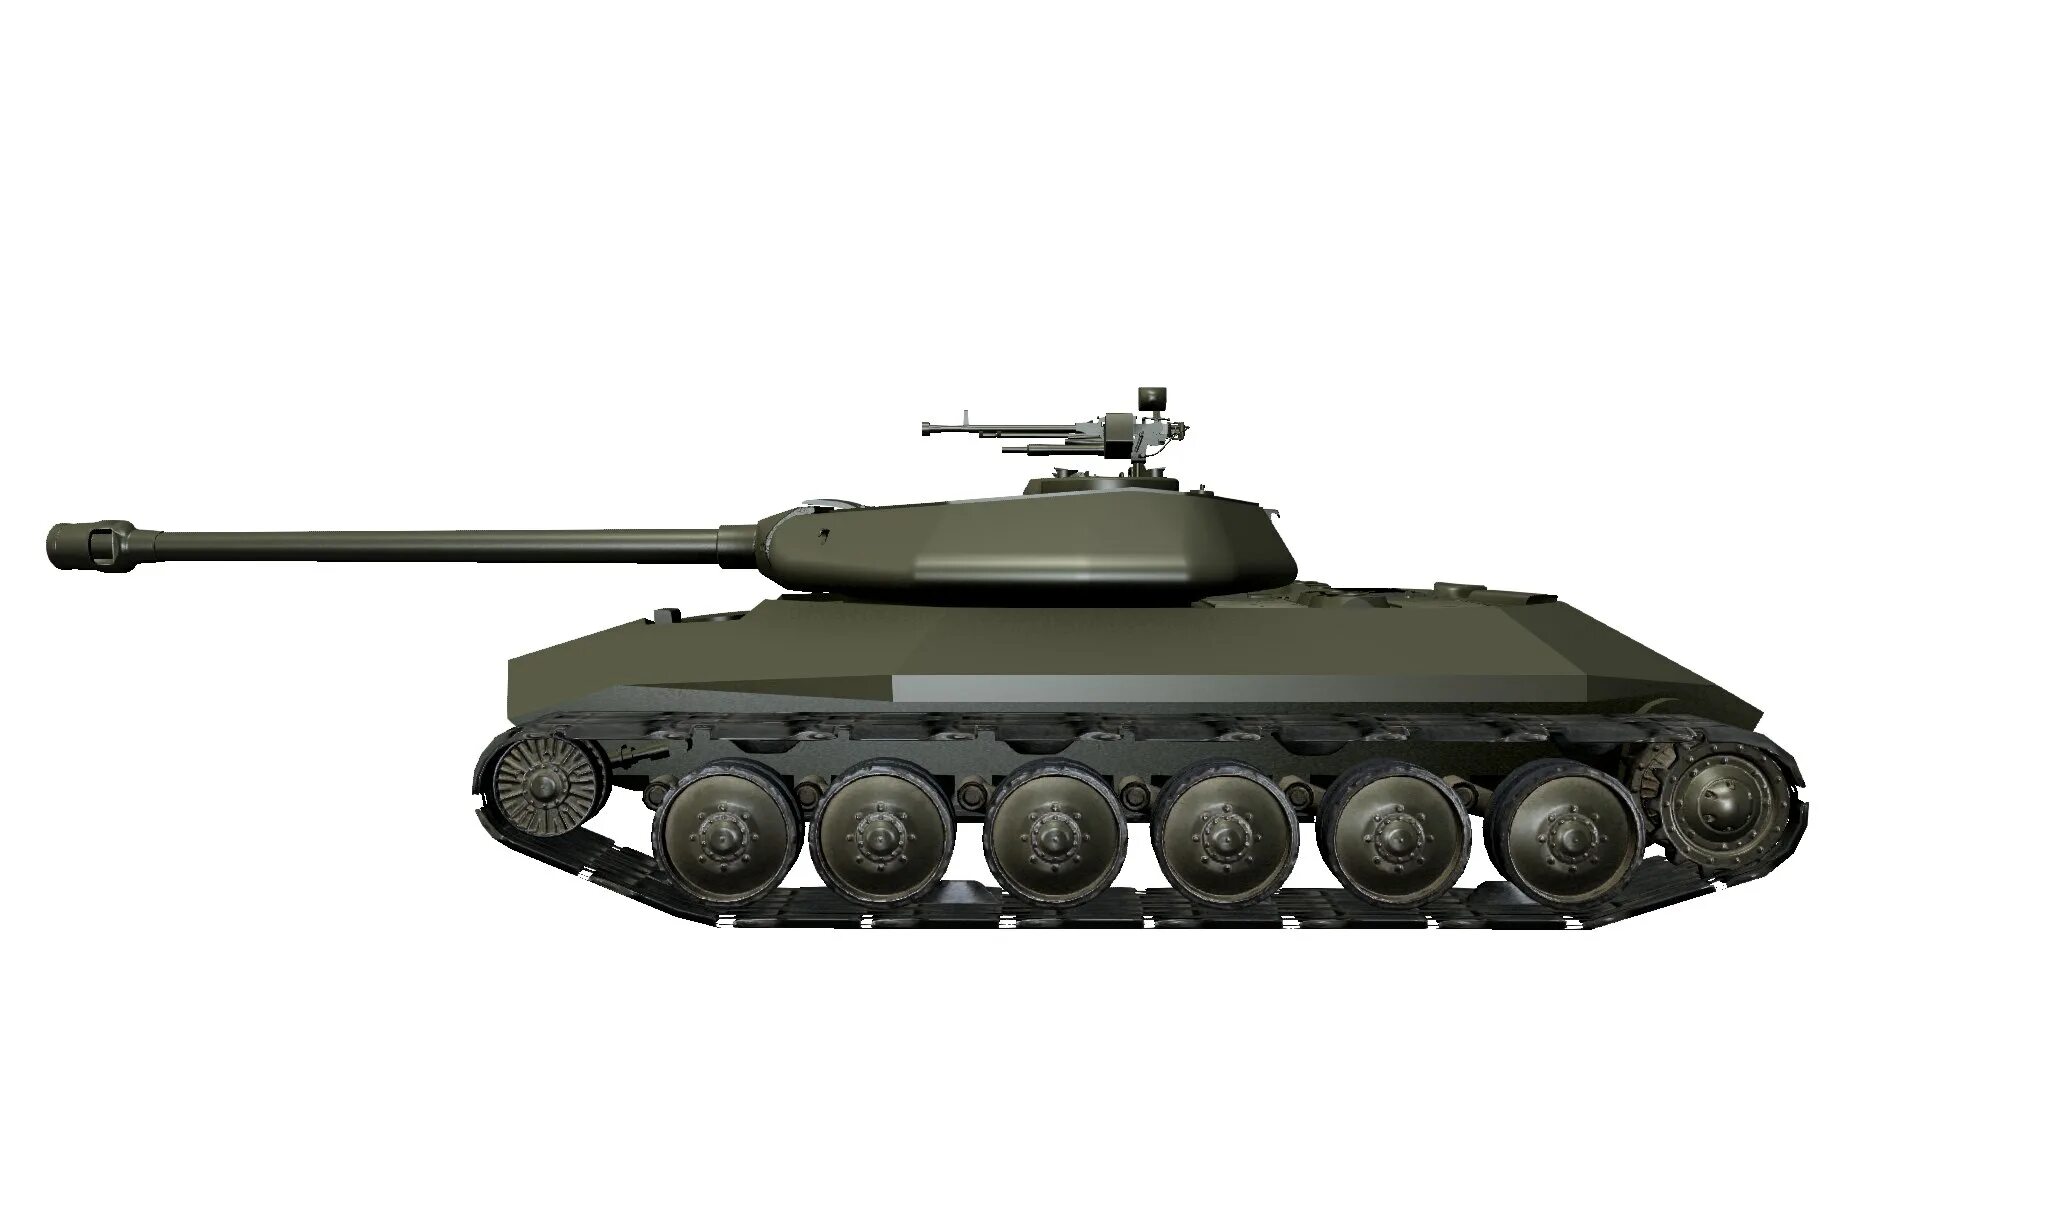 ИС 6 вид сбоку. ИС-6 (объект 252). Т-140 танк сбоку. Танк ИС 6 сбоку.